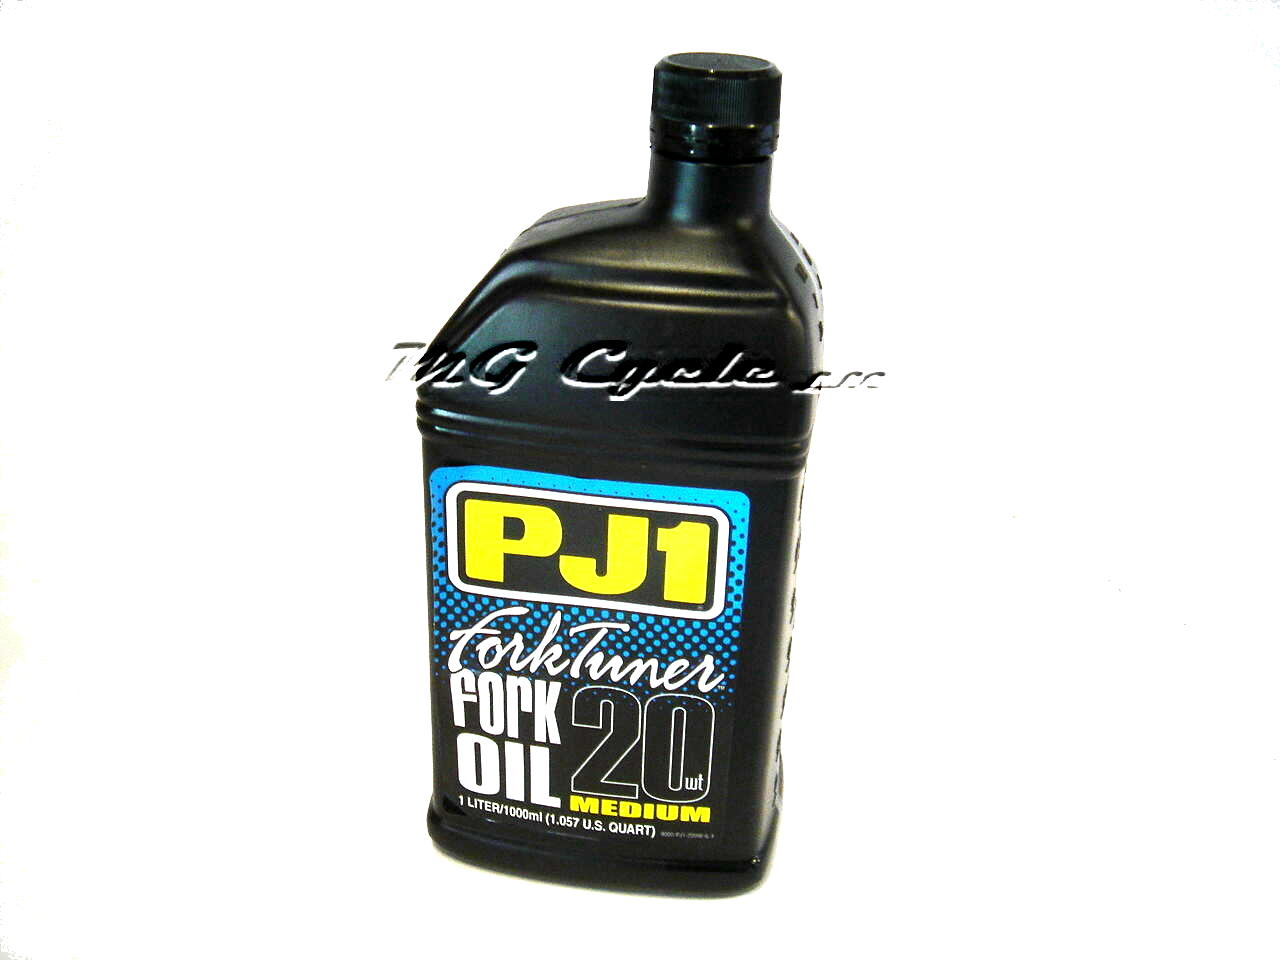 PJ1 Fork Tuner fork oil 20W medium, 1 liter bottle